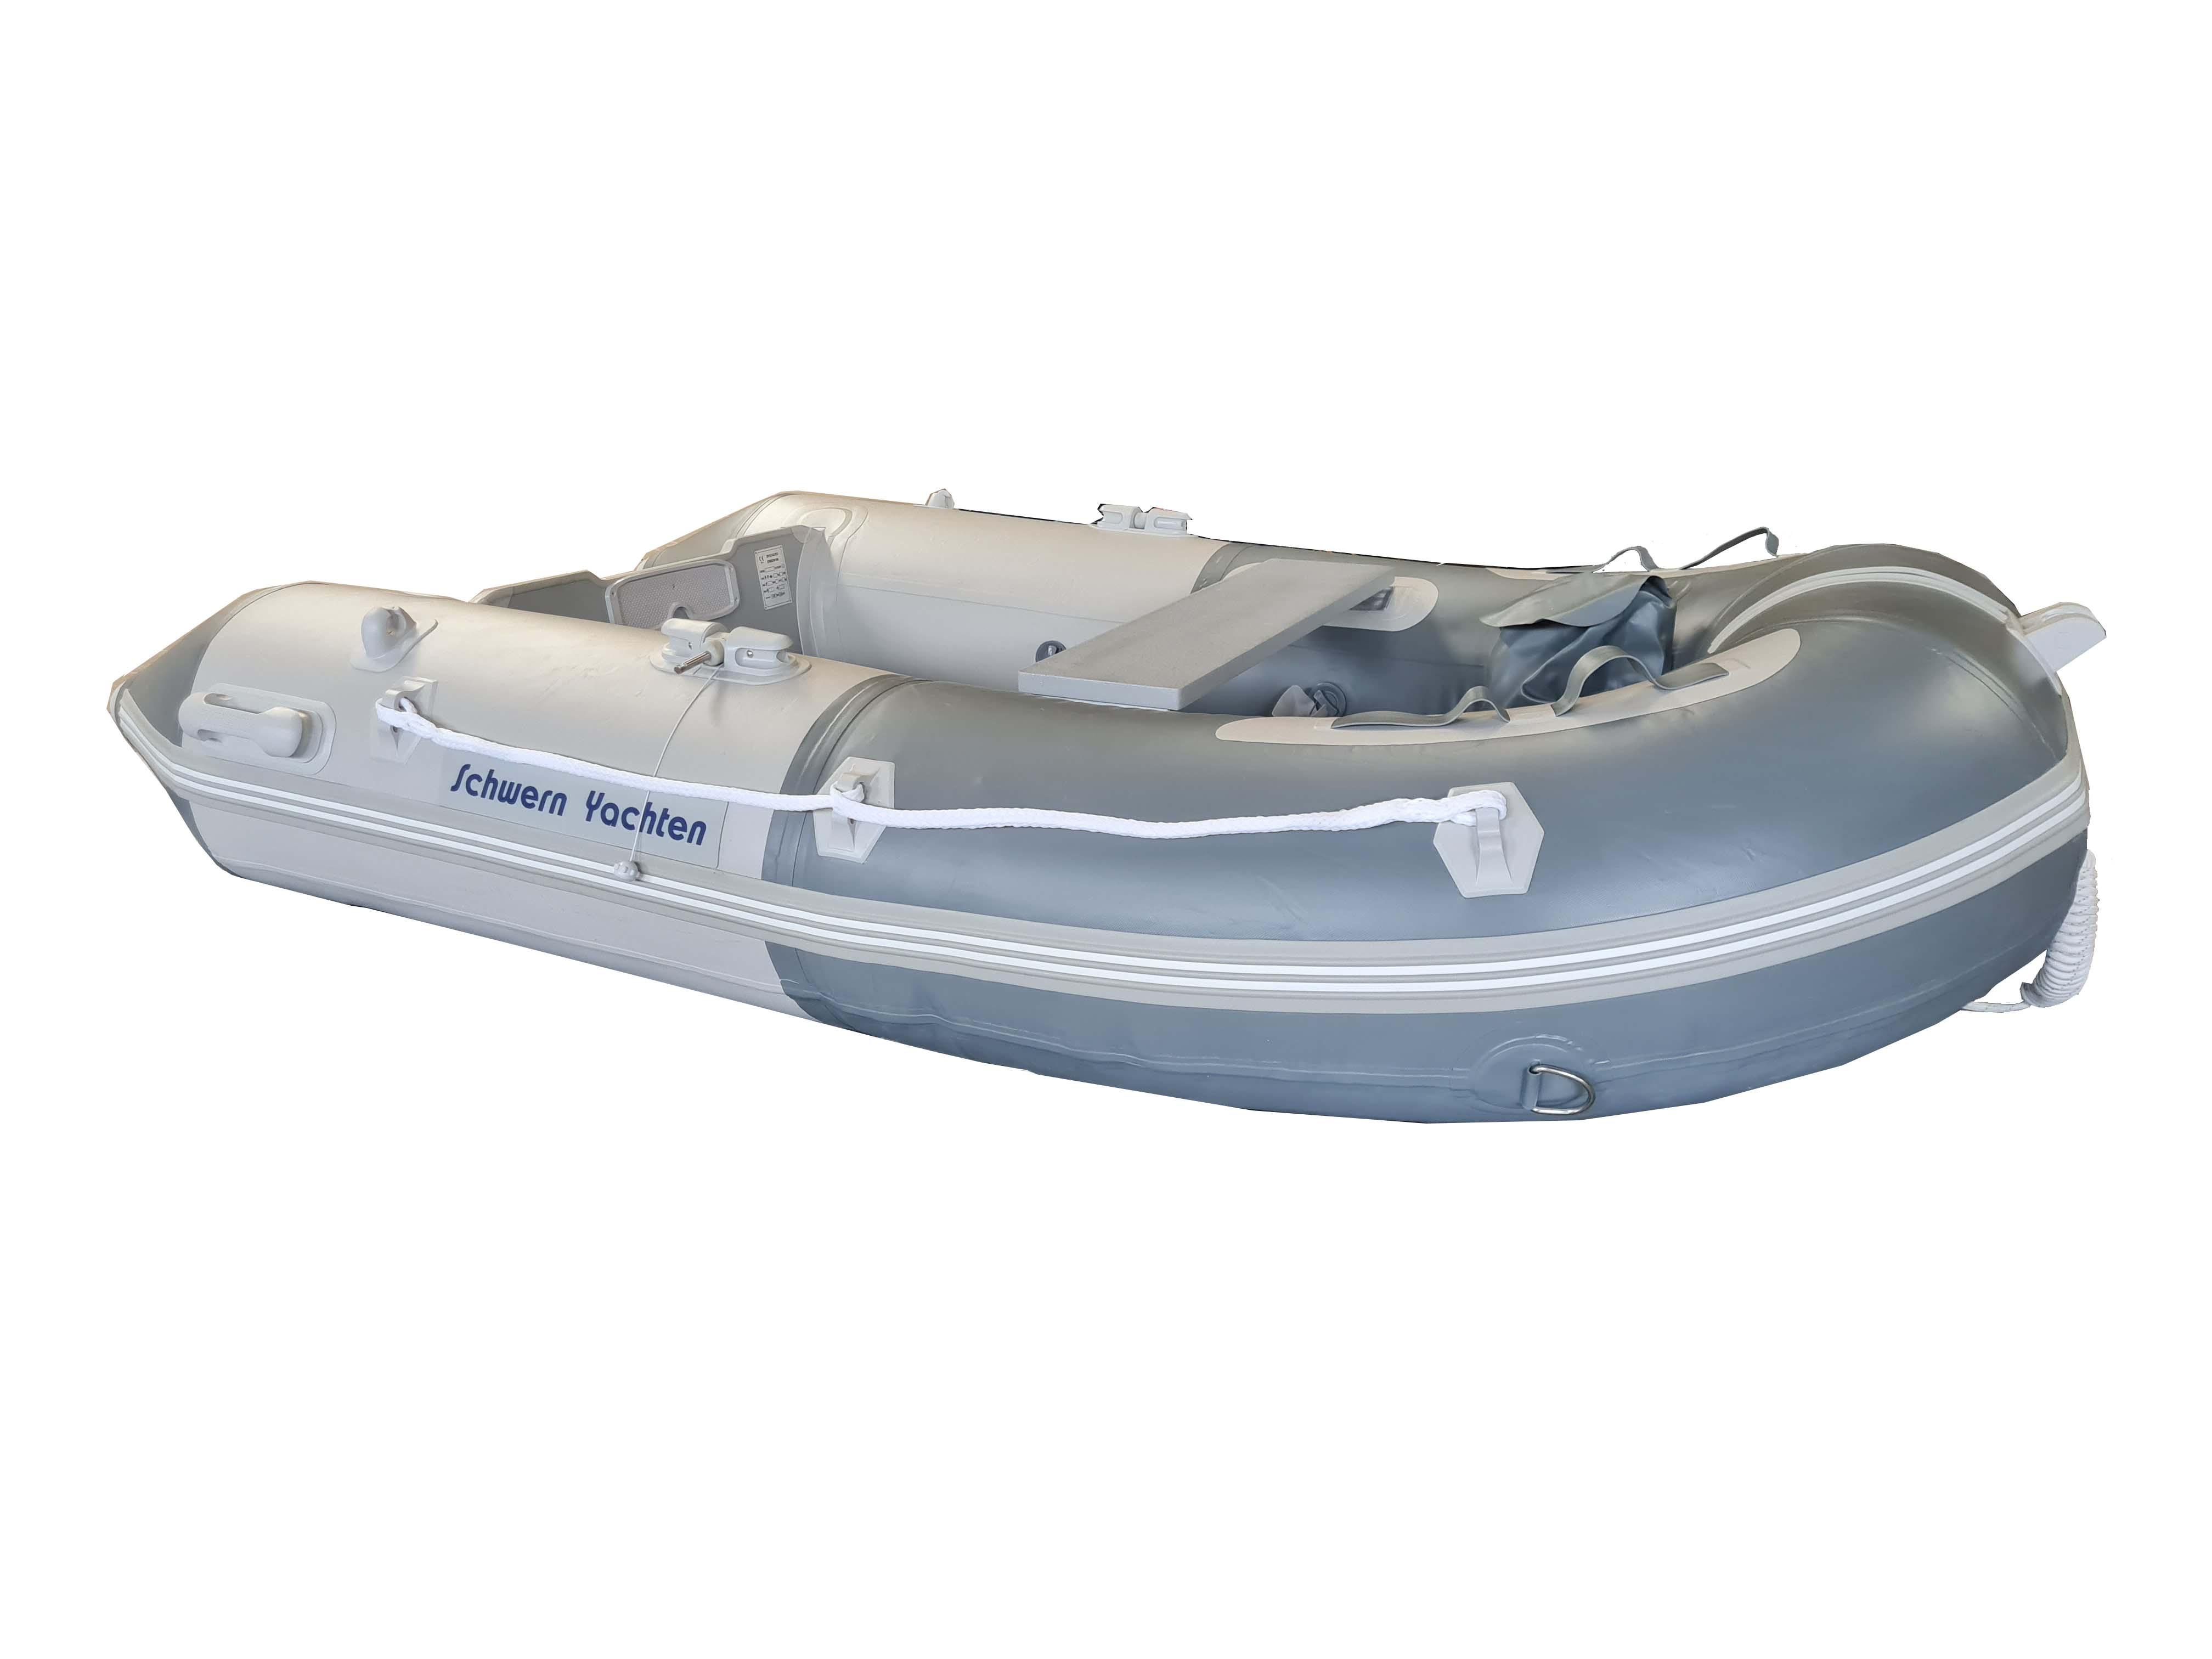 2022 Inflatable Schwern Yachten 250 cm